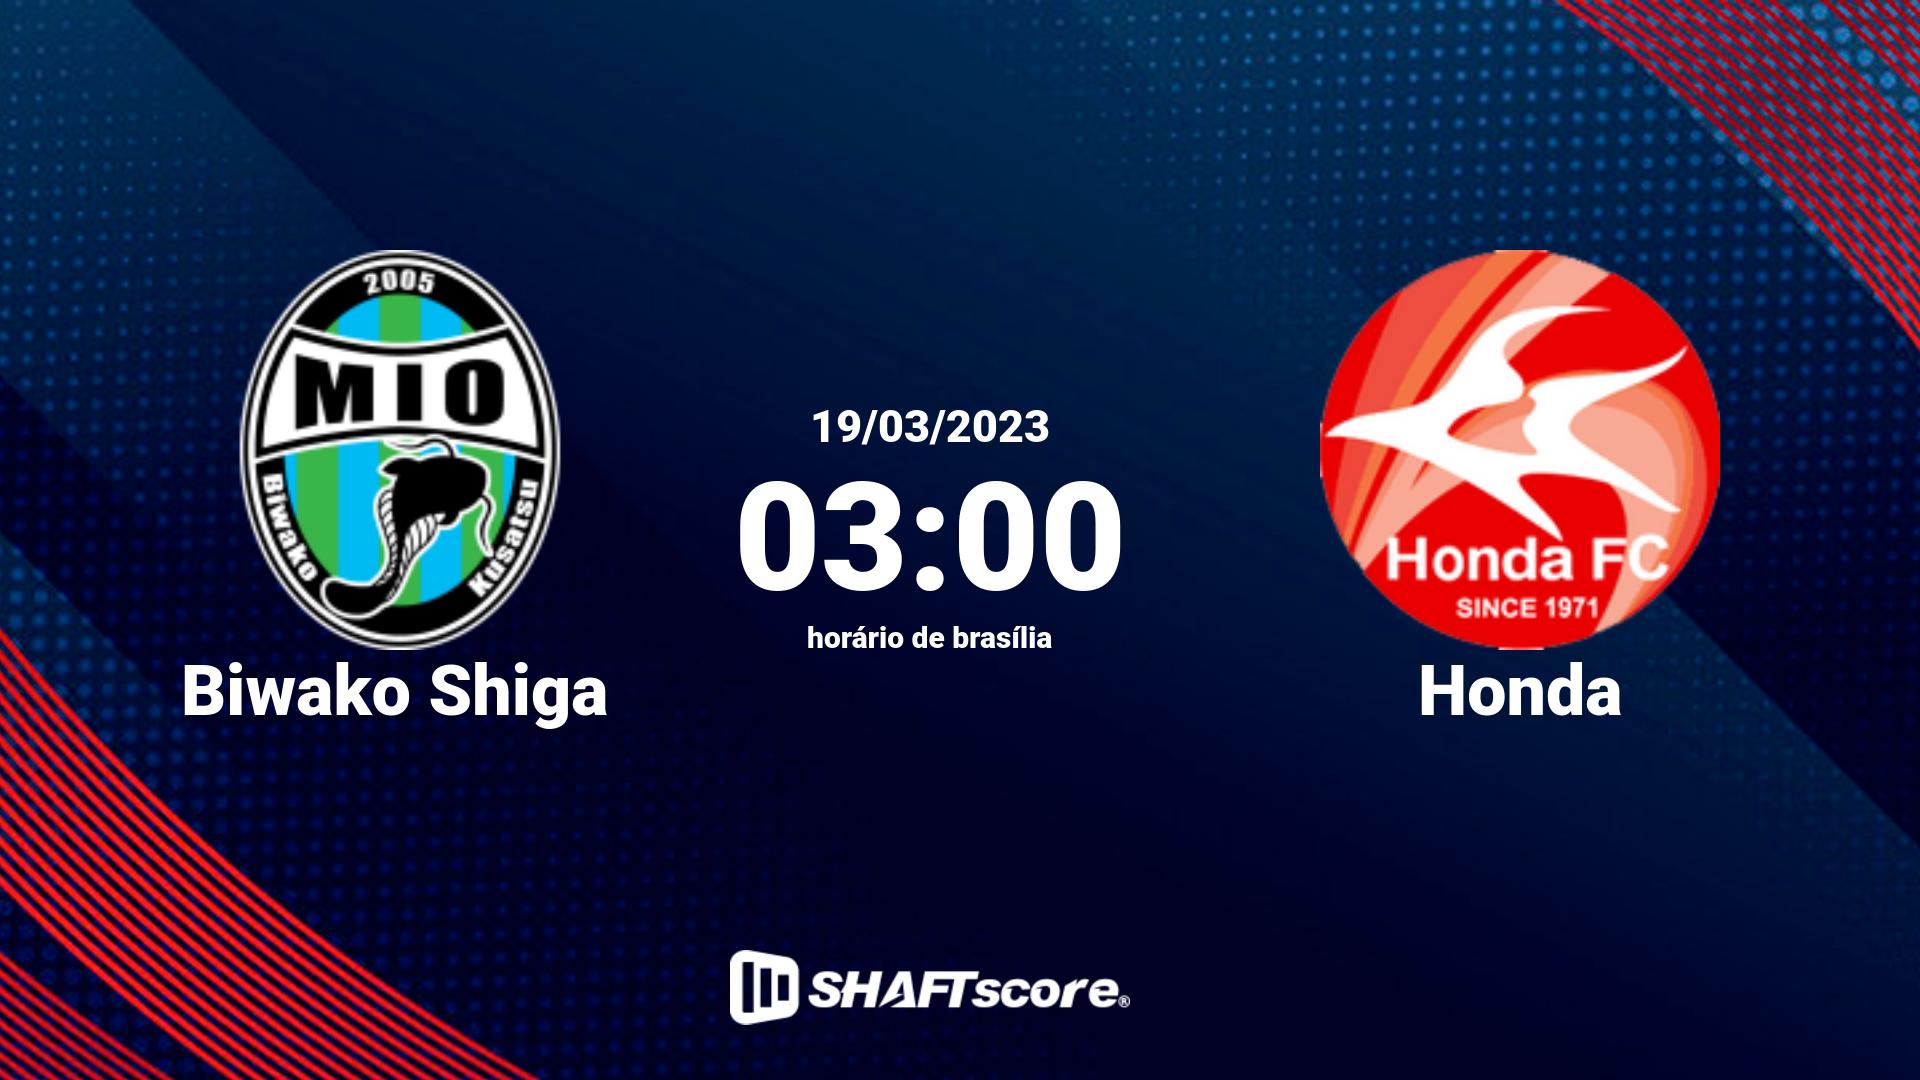 Estatísticas do jogo Biwako Shiga vs Honda 19.03 03:00